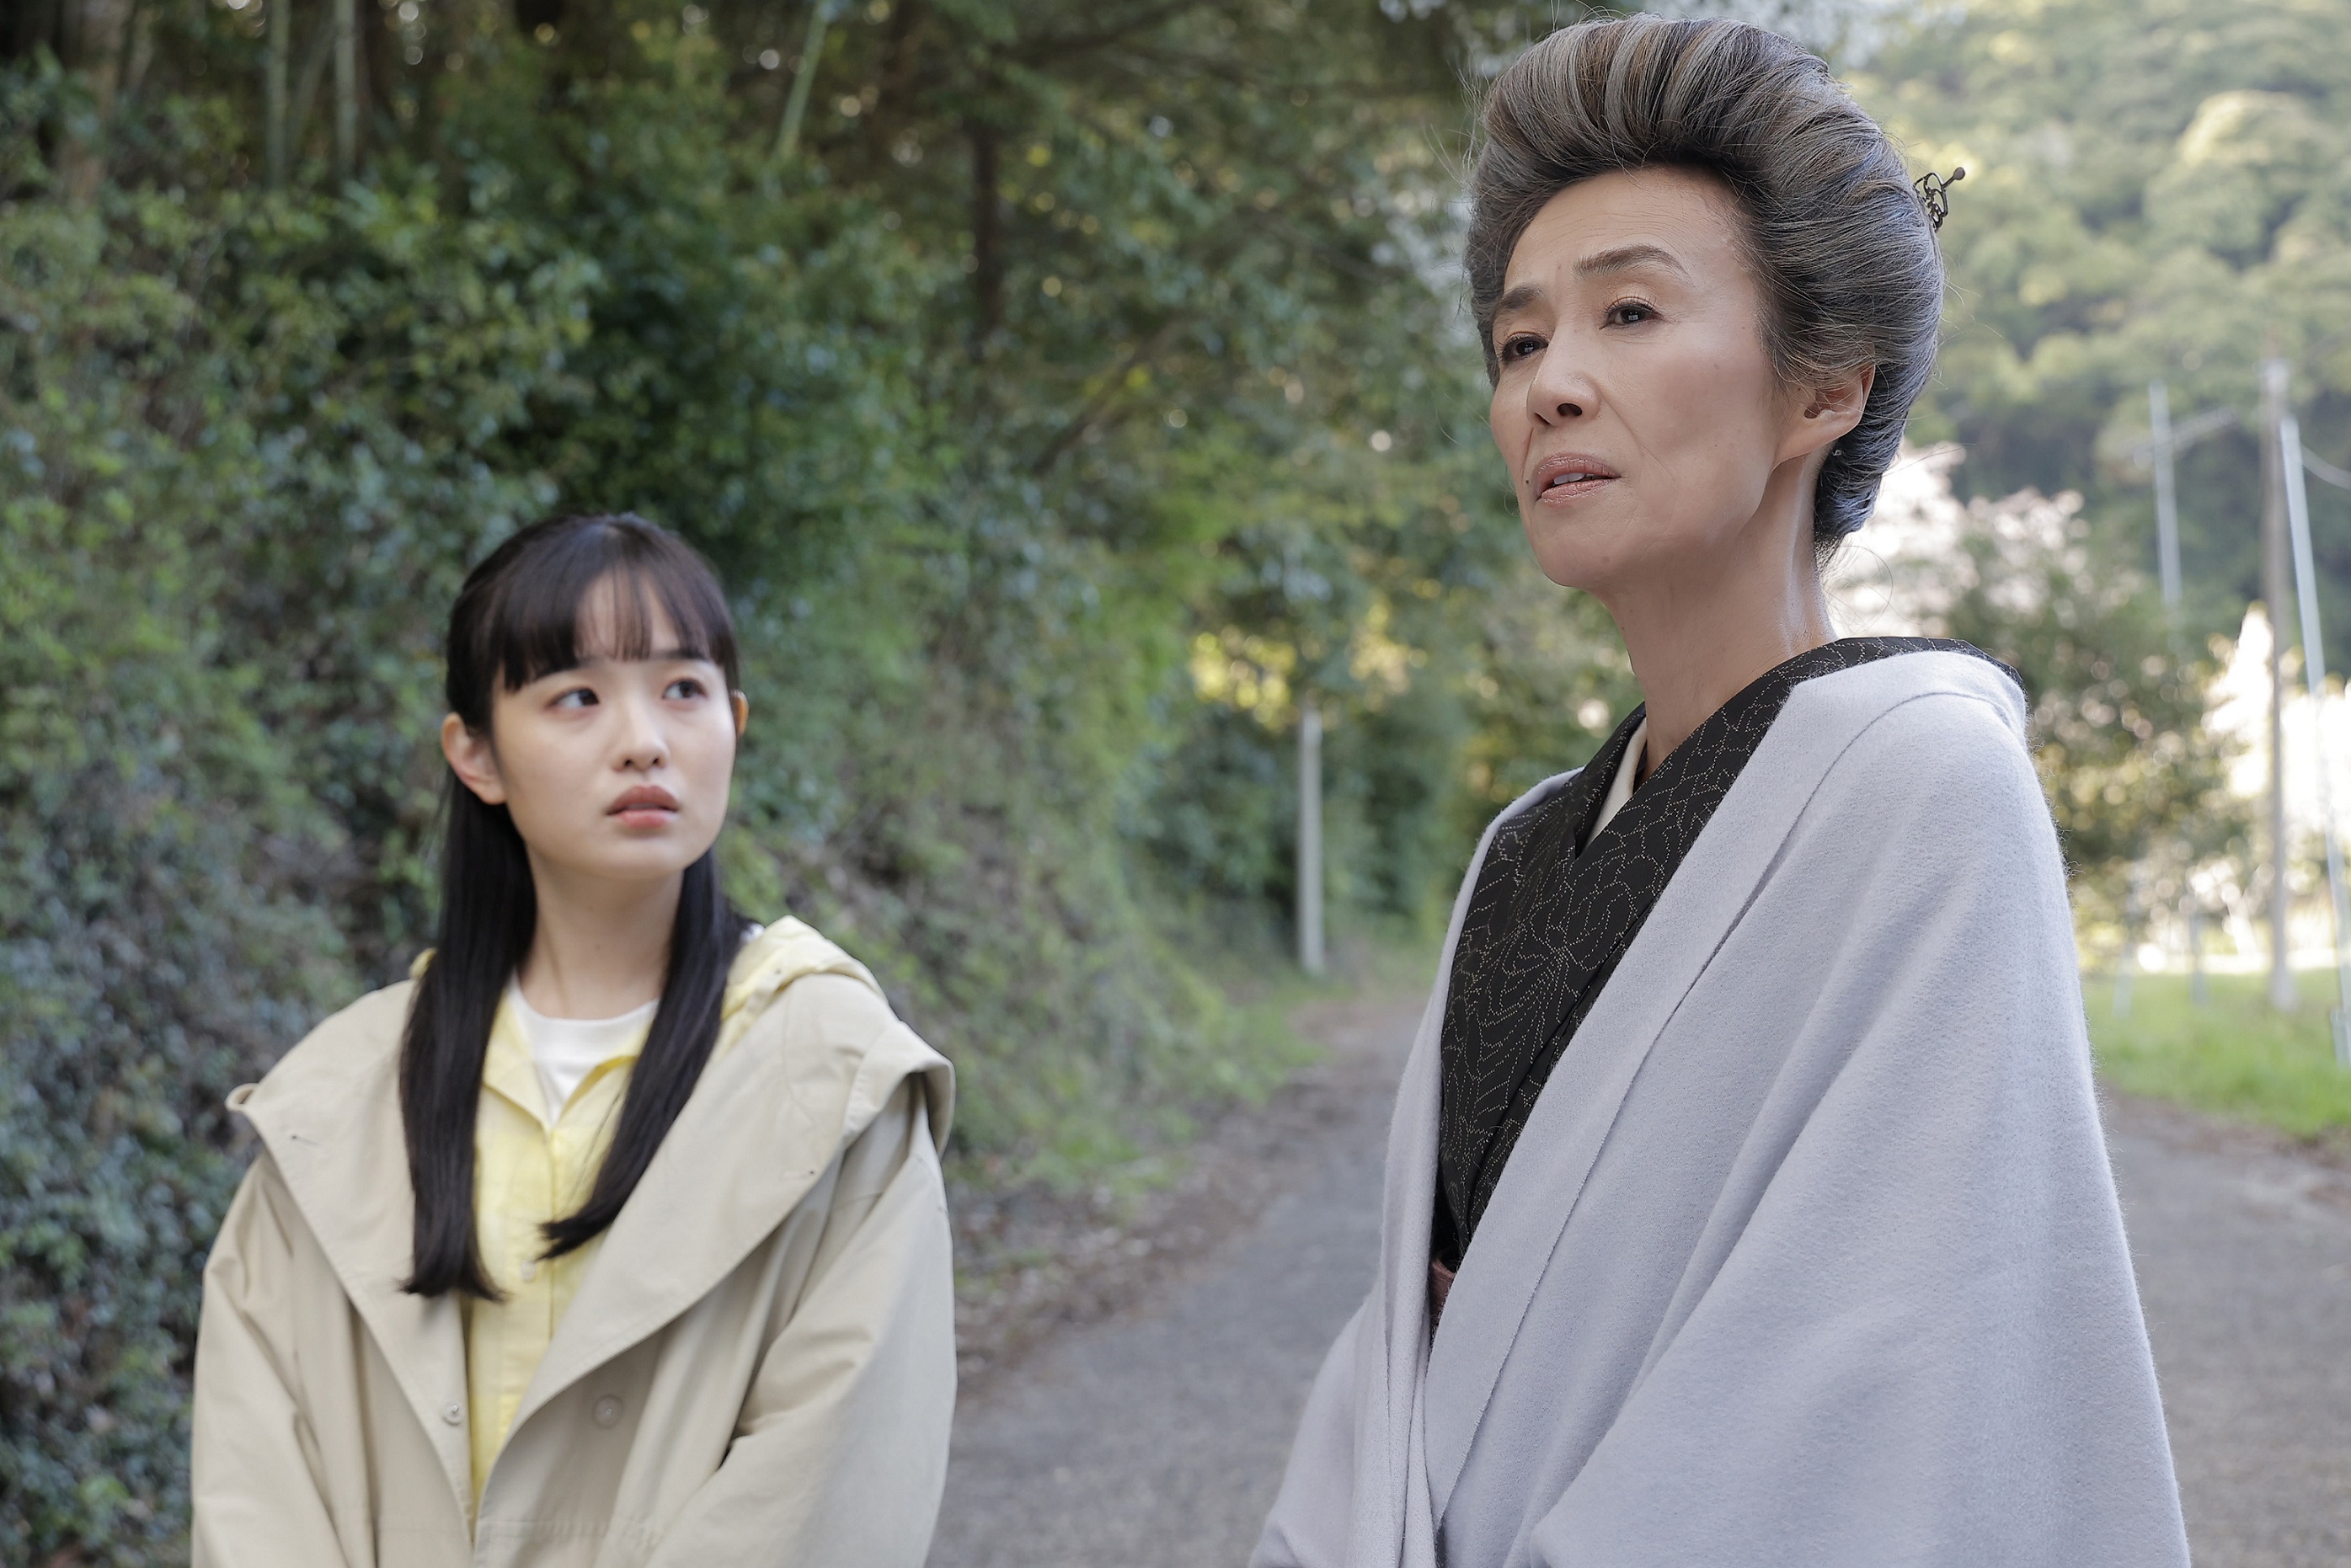 萬田久子主演「グランマの憂鬱」の“三婆”が楽しい - 産経ニュース